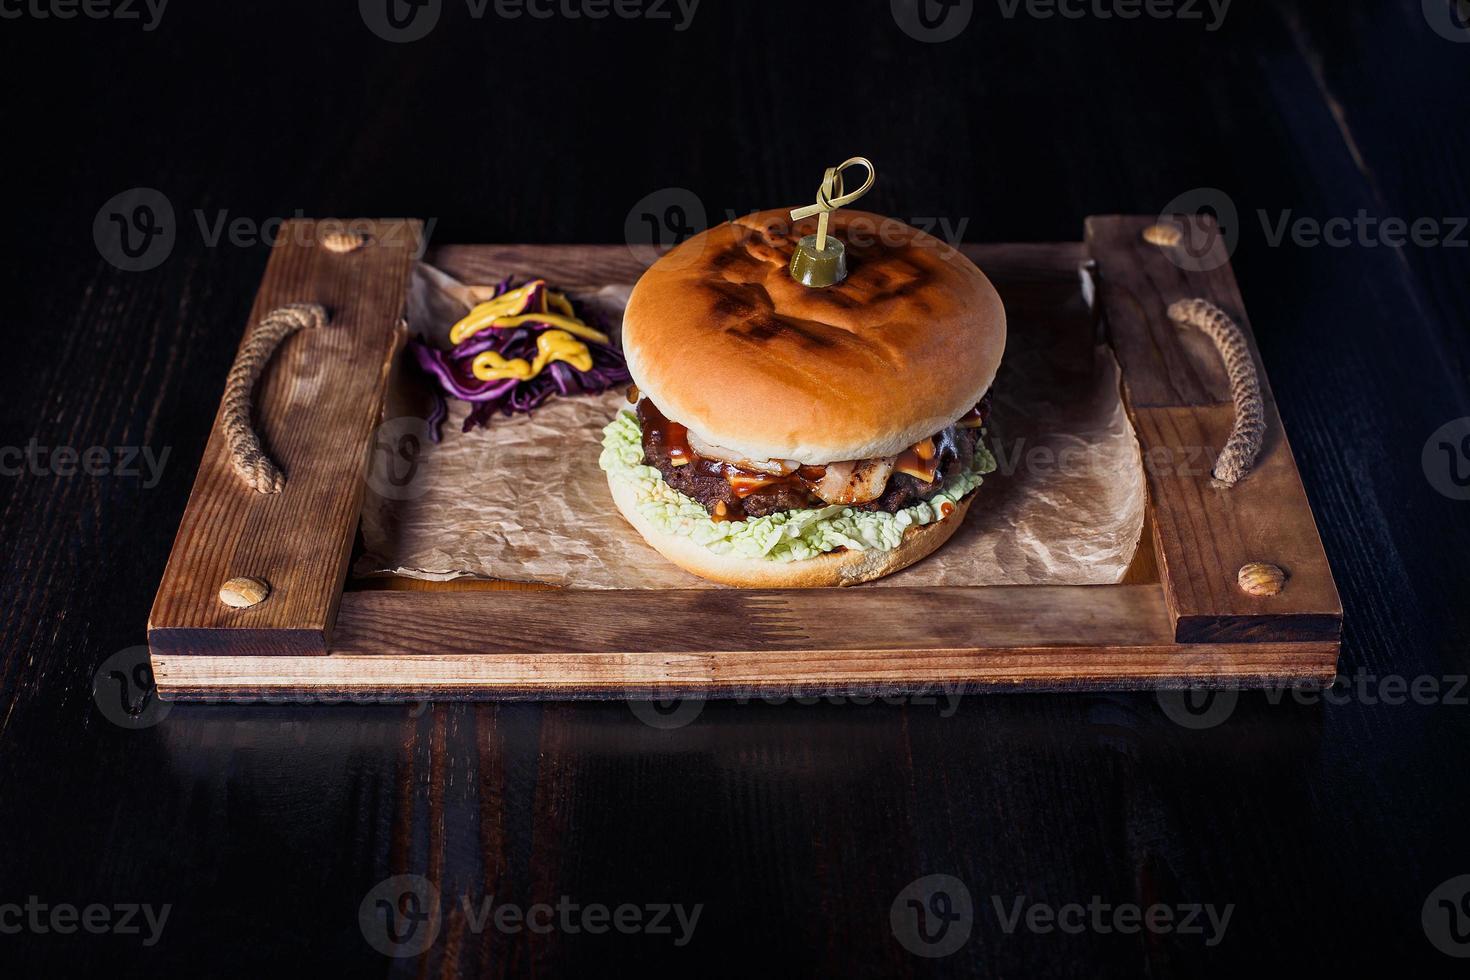 ostburgare på ett träbricka i en restaurang, på en mörk bakgrund foto